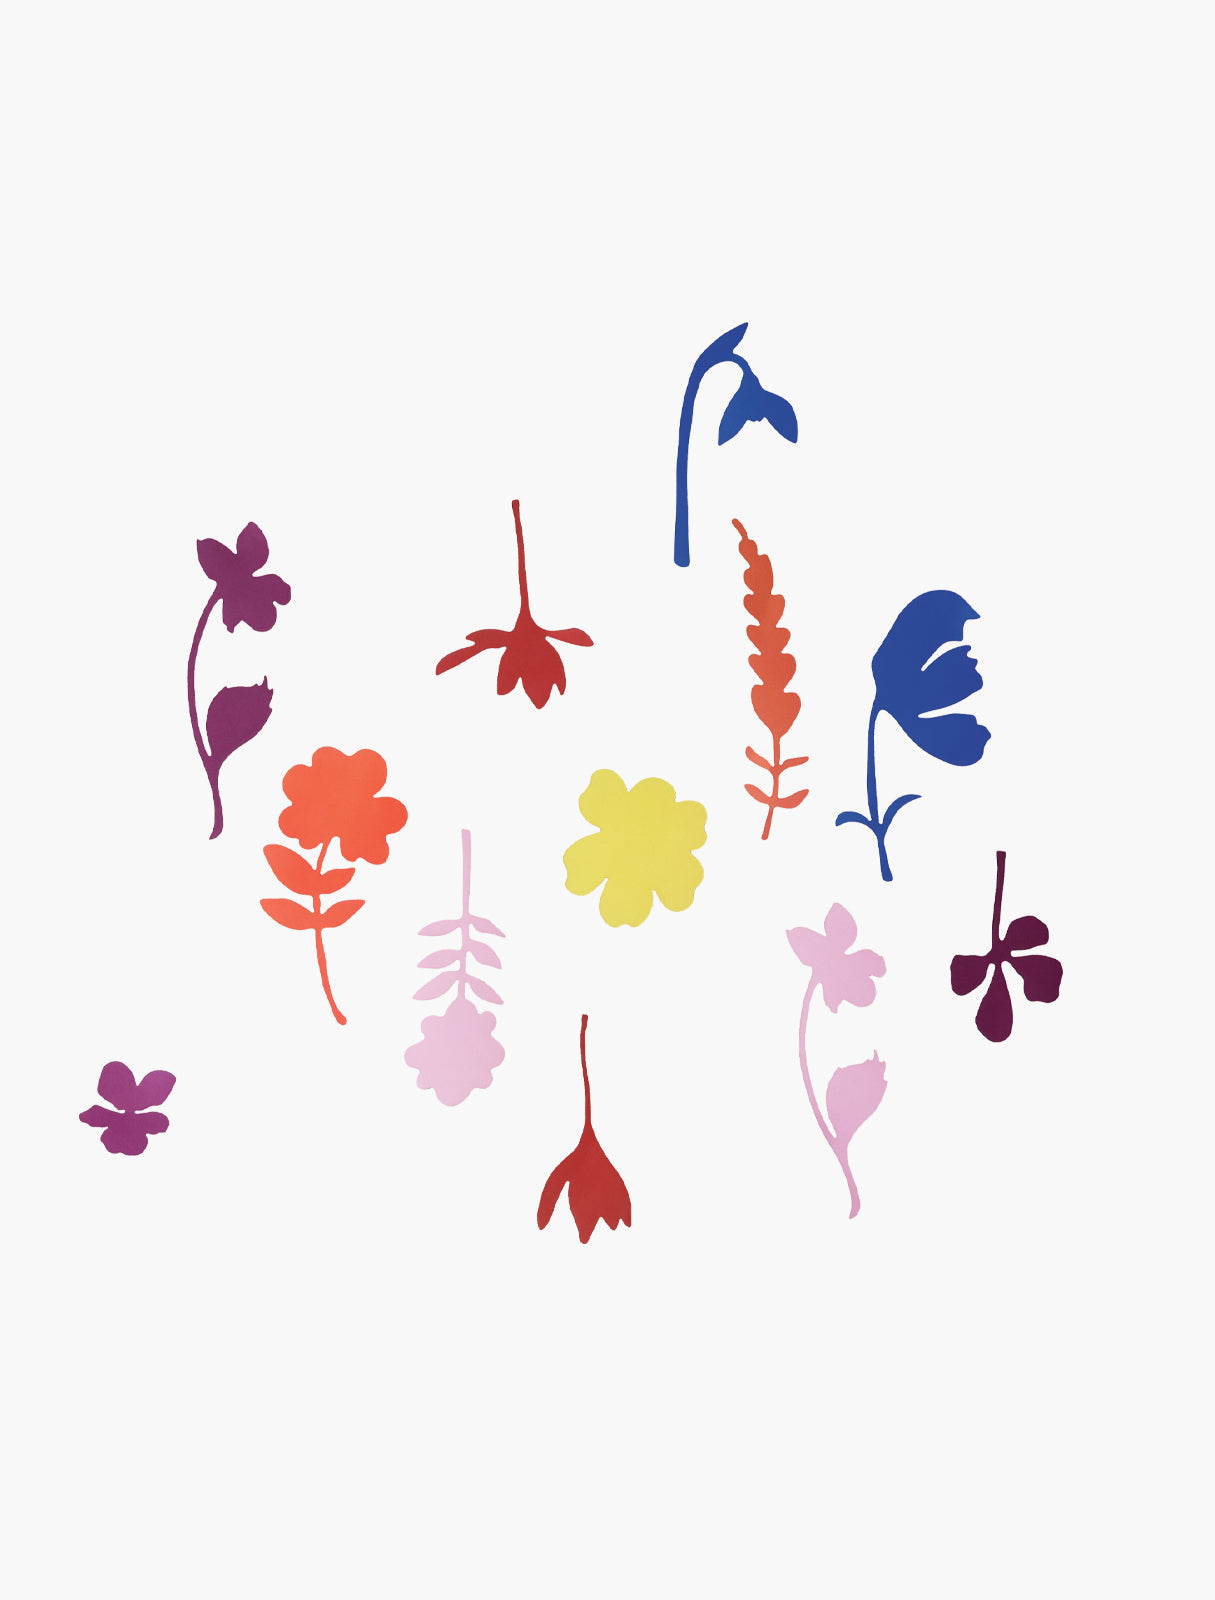 Le monde des fleurs sauvages (Field flowers) | Studio ROOF